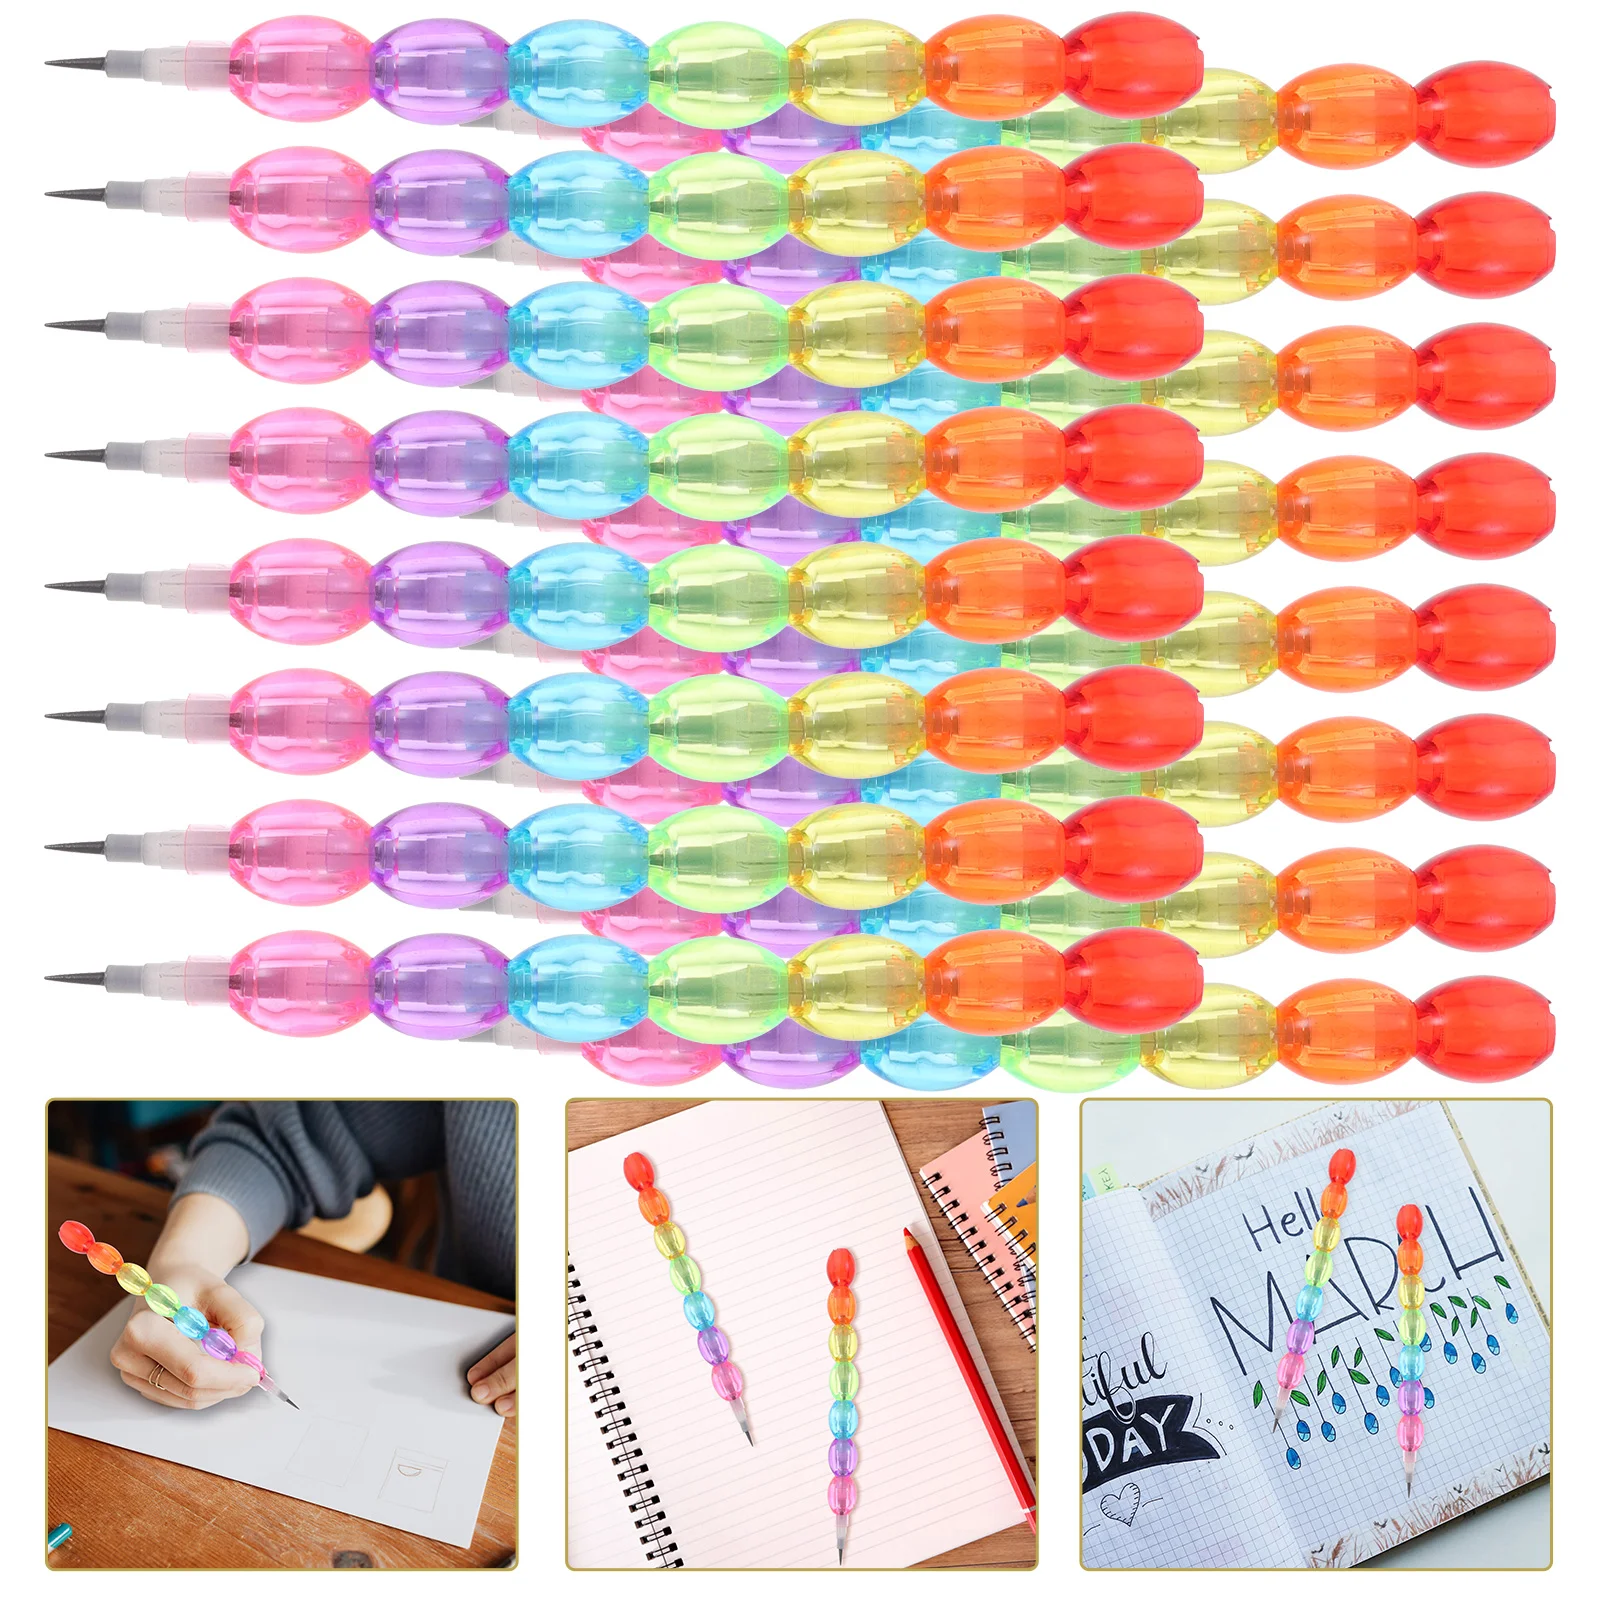 

16 шт. штабелируемые цветные карандаши, съемные карандаши, не затачивающие карандаши, Детские карандаши